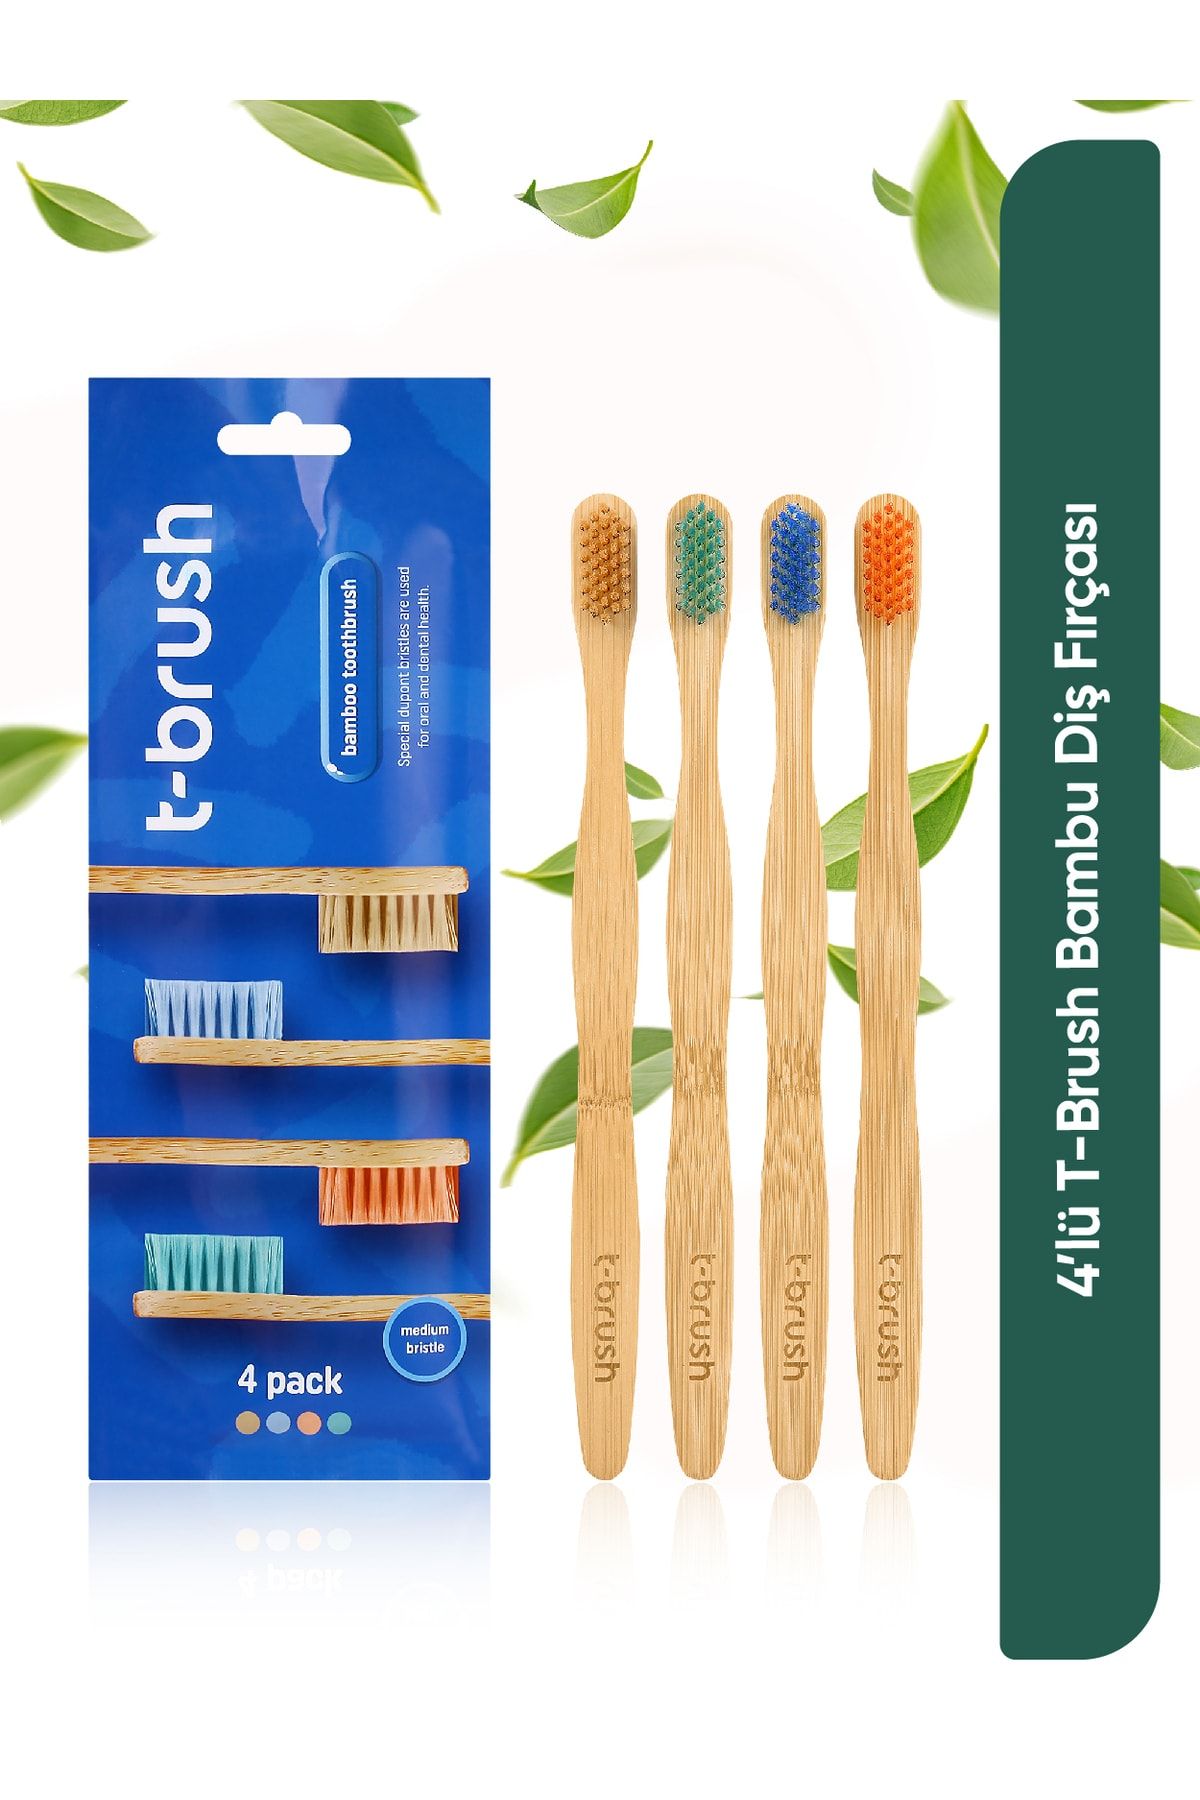 TBRUSH Doğal Bambu Vegan Diş Fırçası - 4 adet- Orta Sert (Medium) - Plastiksiz